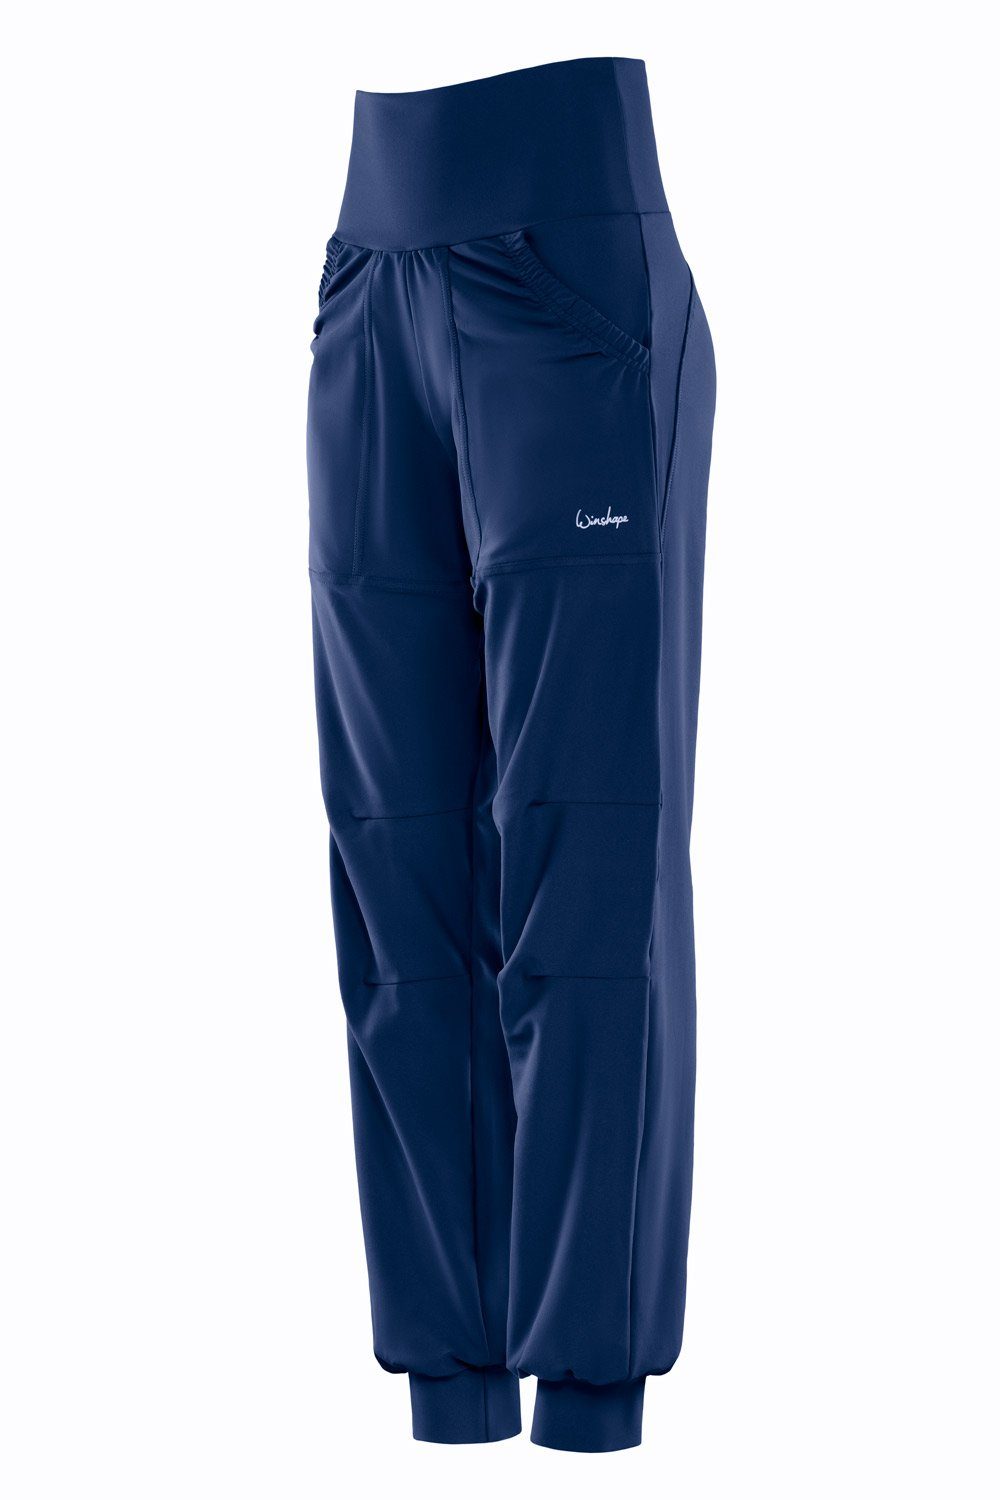 Winshape Sportbroek Functional Comfort Leisure Time Trousers LEI101C